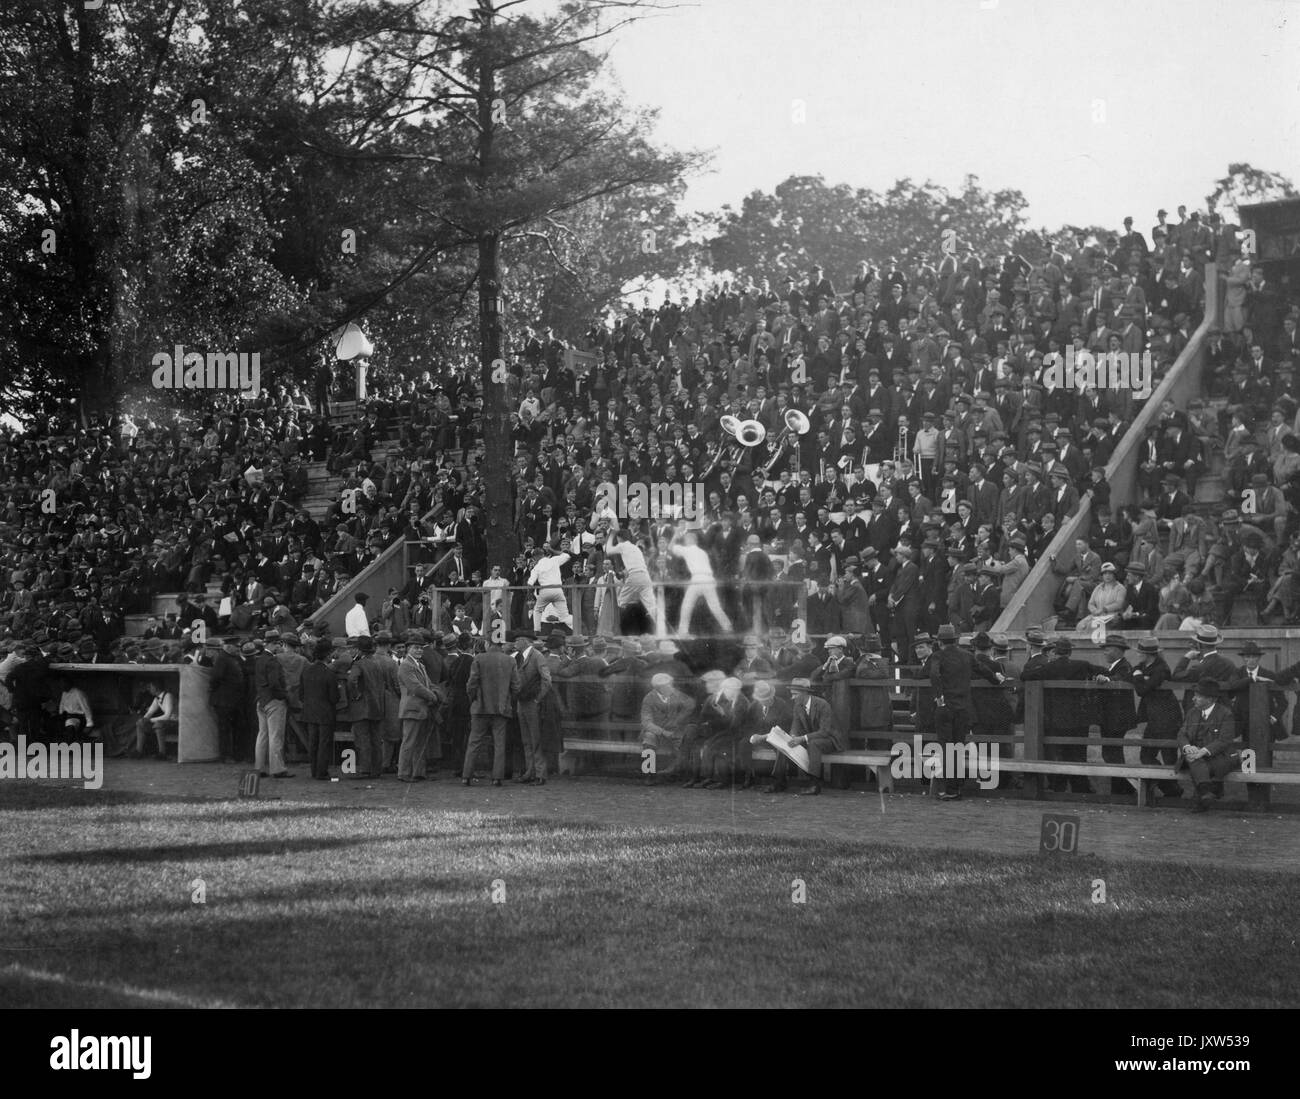 Bande et de meneurs de divertir un public nombreux à un événement sportif à l'université Johns Hopkins, 1930. Banque D'Images